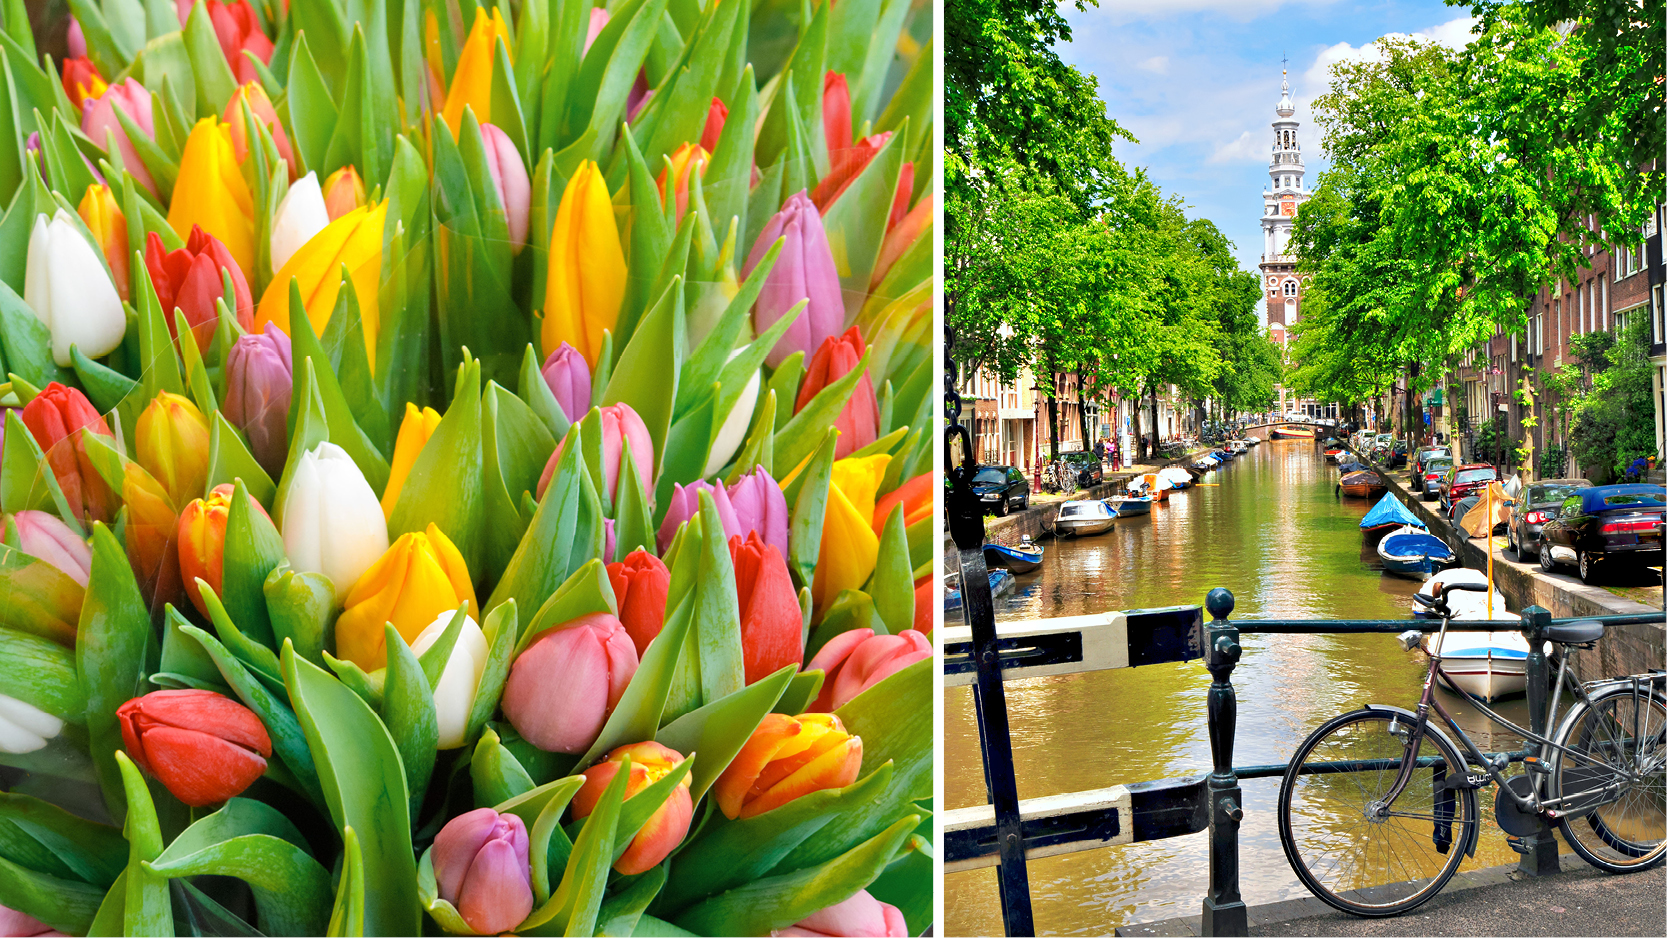 vårkänslor i Amsterdam med tulpaner och cyklister vid kanalerna.